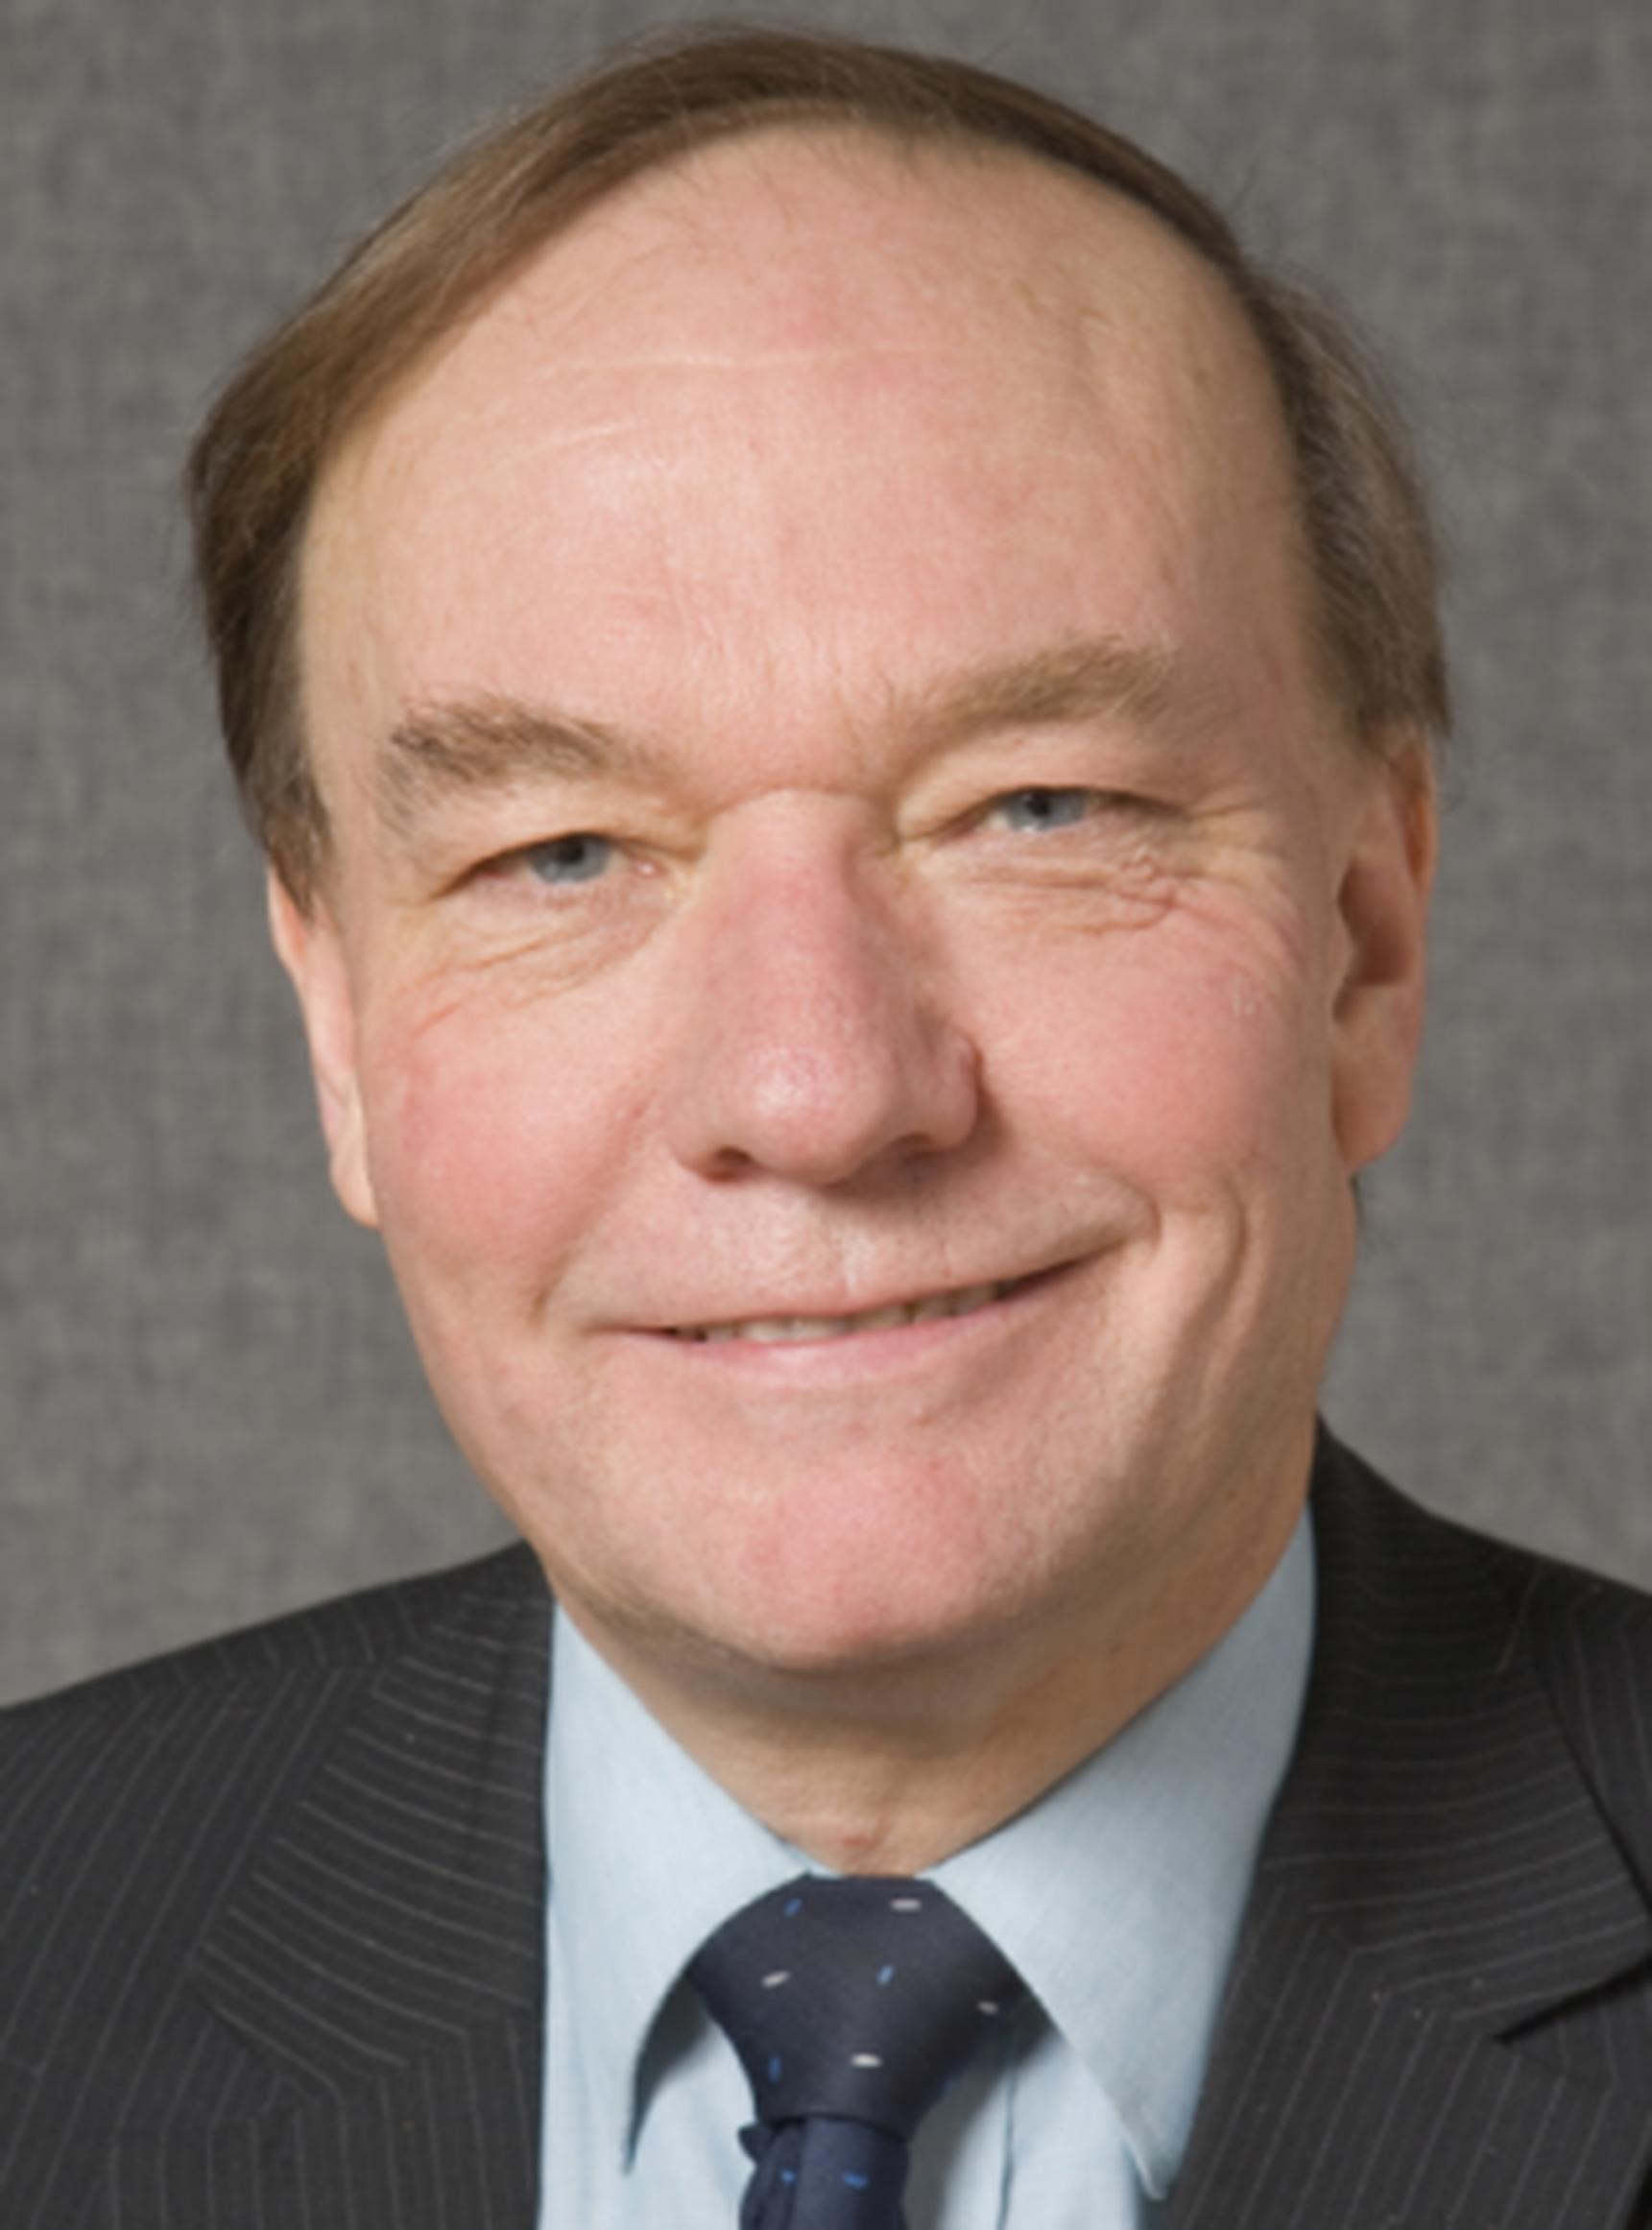 Professor Roger Mackett